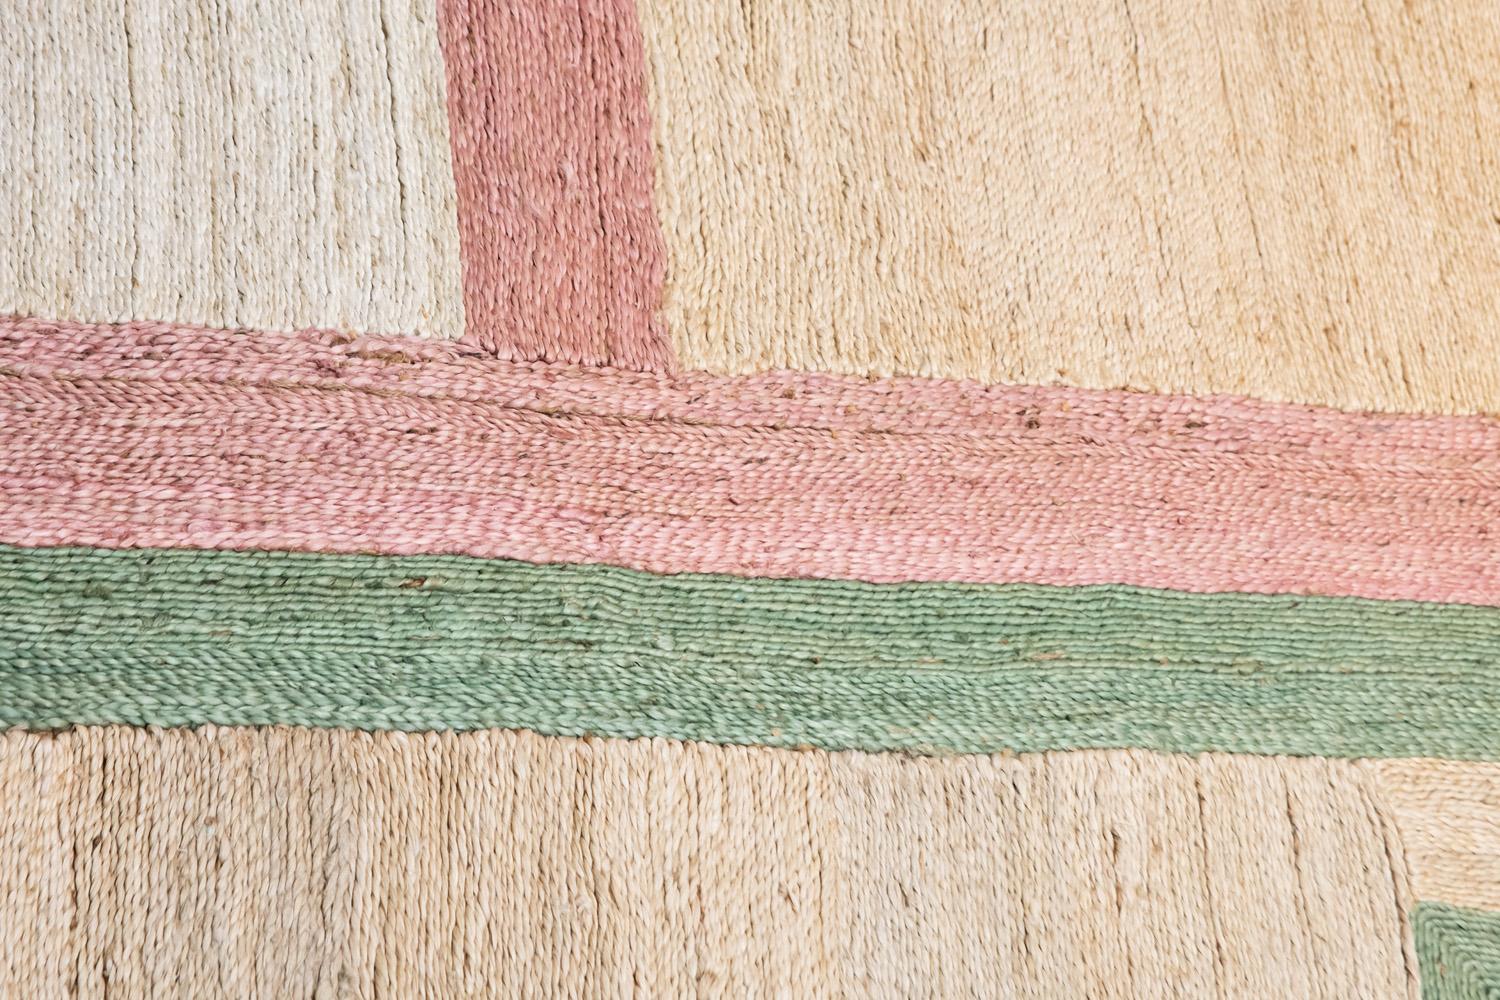 Ce tapis de jute a été cousu à la main de manière éthique dans les meilleurs fils de jute par des artisans en Inde, en utilisant une technique de tissage traditionnelle de cette région.
Comme il est tissé à la main dans des fils de fibres